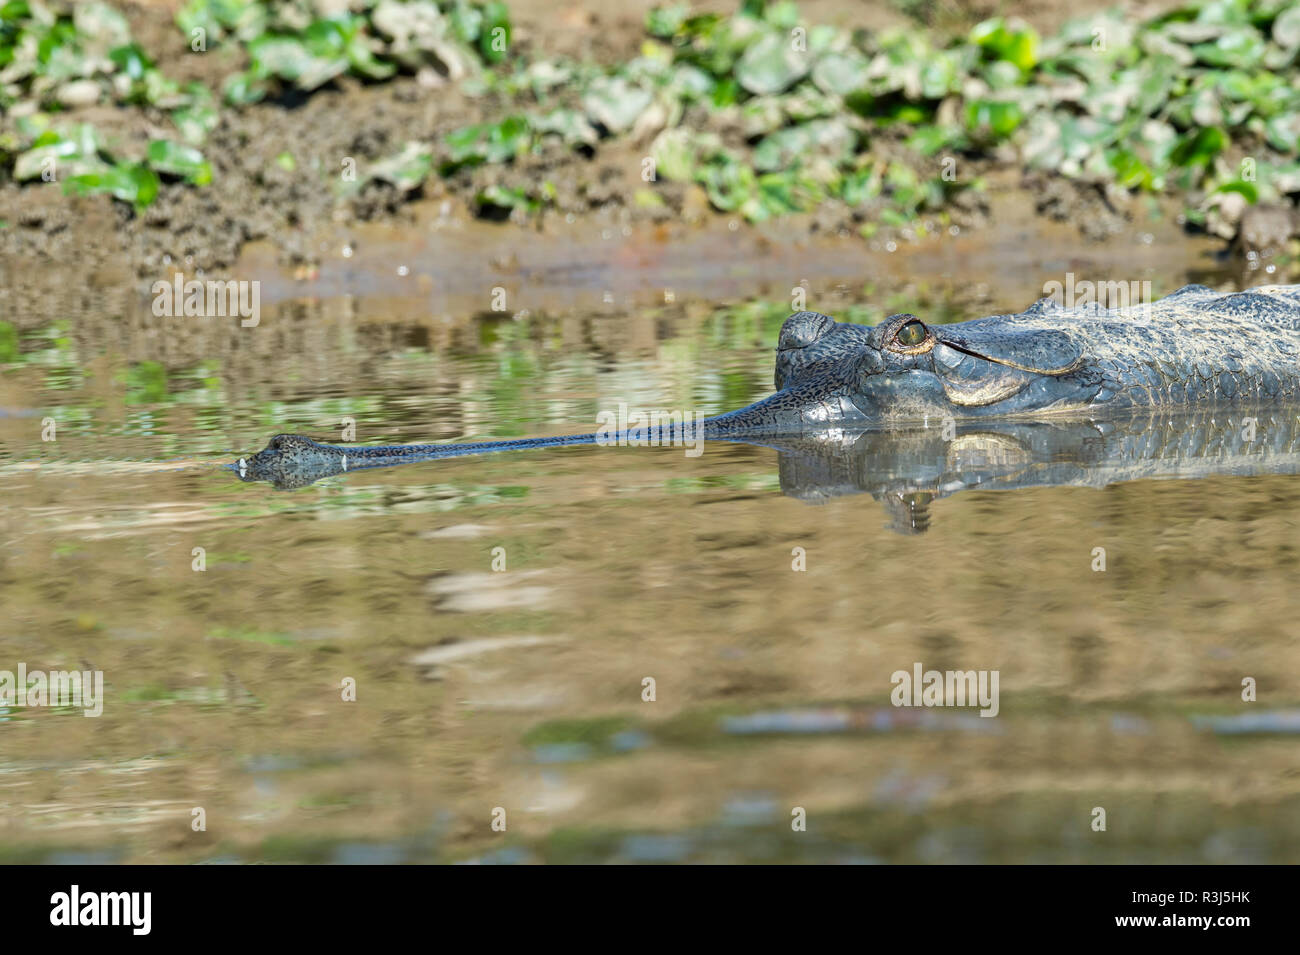 Ou gavial gavial (Gavialis gangeticus) dans l'eau, espèces en danger critique d'extinction, Crocodylidae, parc national de Chitwan Banque D'Images